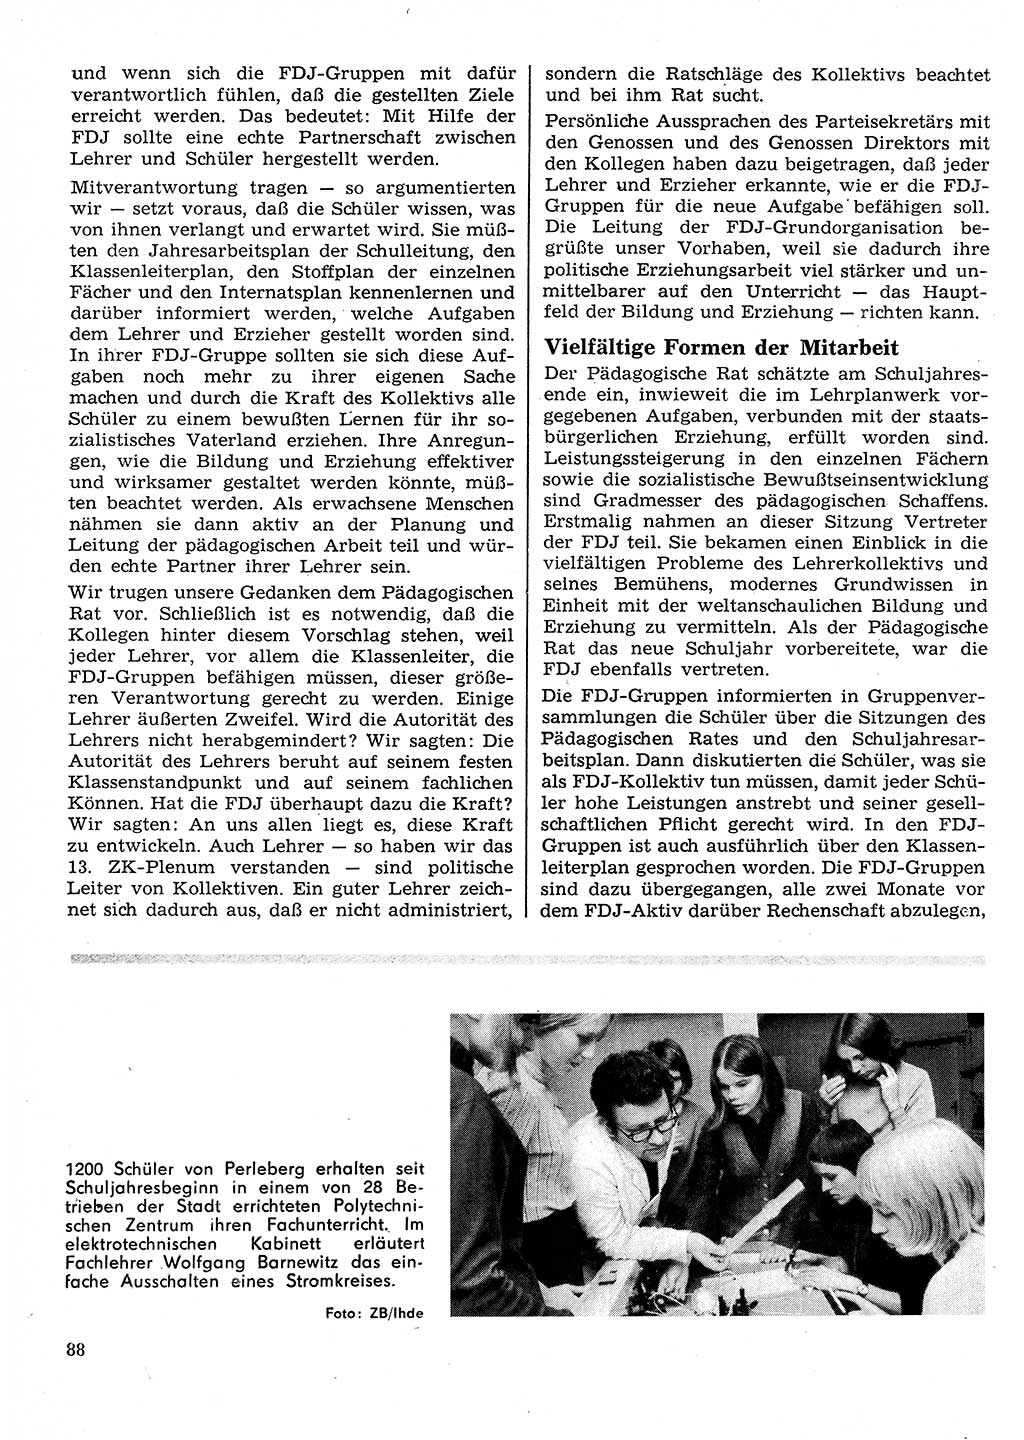 Neuer Weg (NW), Organ des Zentralkomitees (ZK) der SED (Sozialistische Einheitspartei Deutschlands) für Fragen des Parteilebens, 26. Jahrgang [Deutsche Demokratische Republik (DDR)] 1971, Seite 88 (NW ZK SED DDR 1971, S. 88)